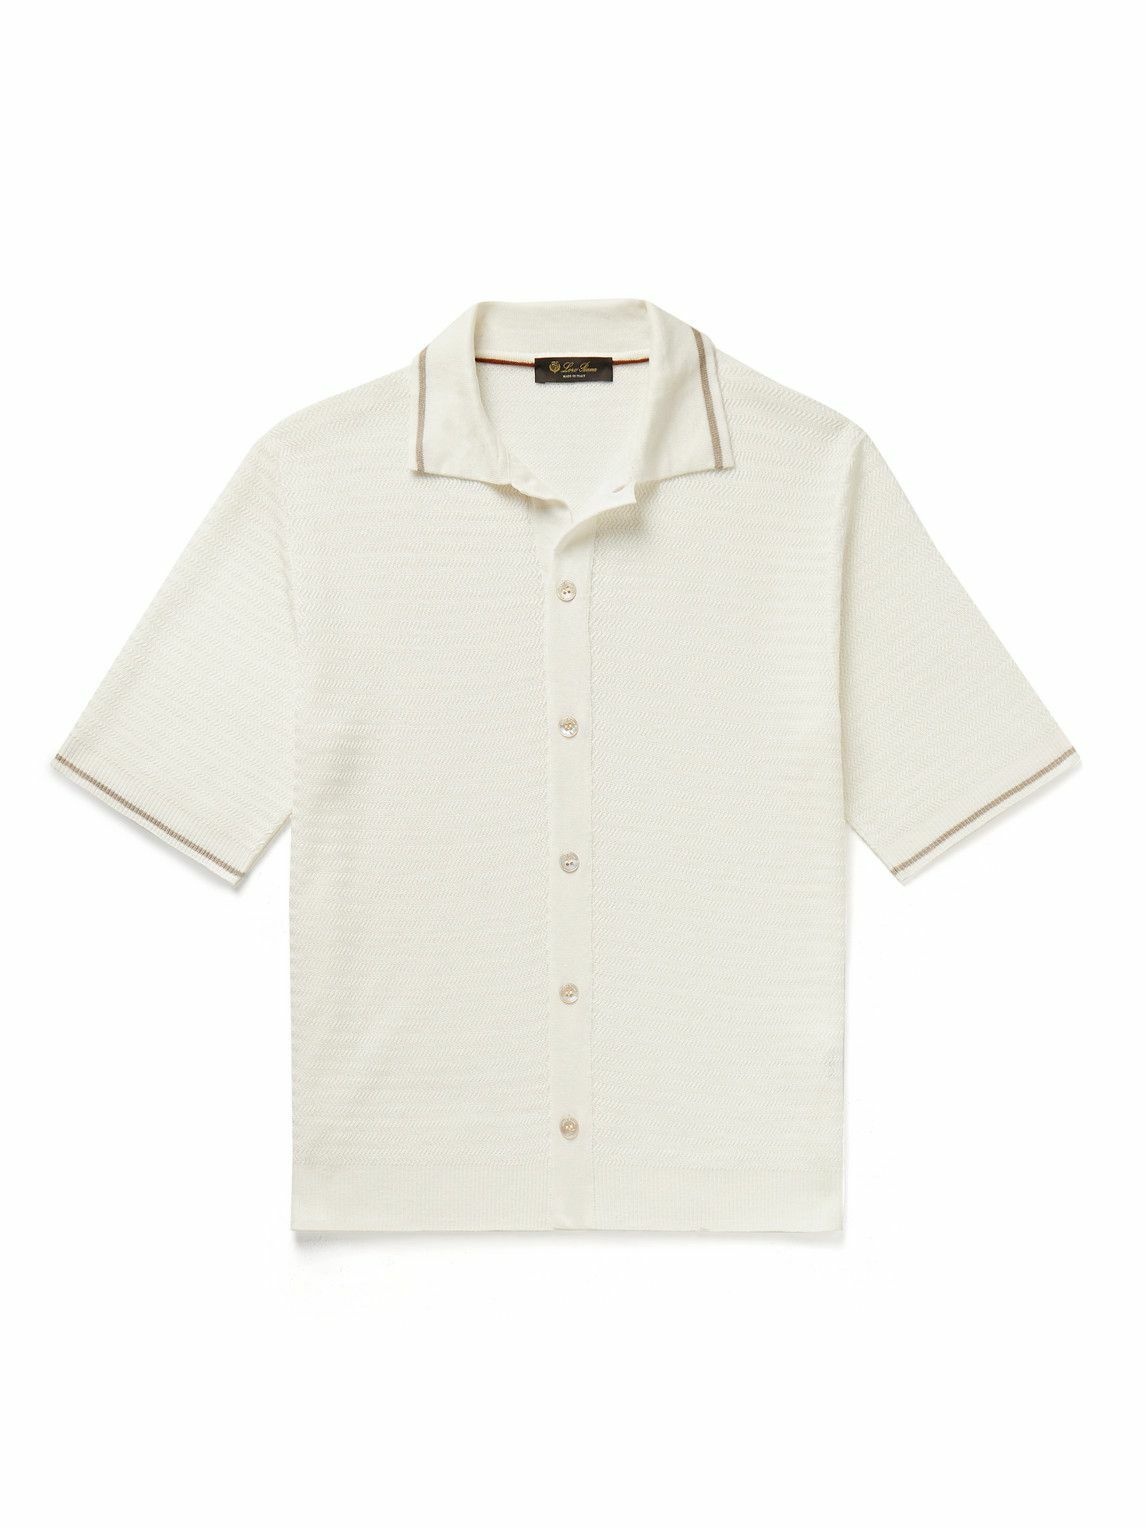 Loro Piana - Bora Bora Linen Shirt - White Loro Piana